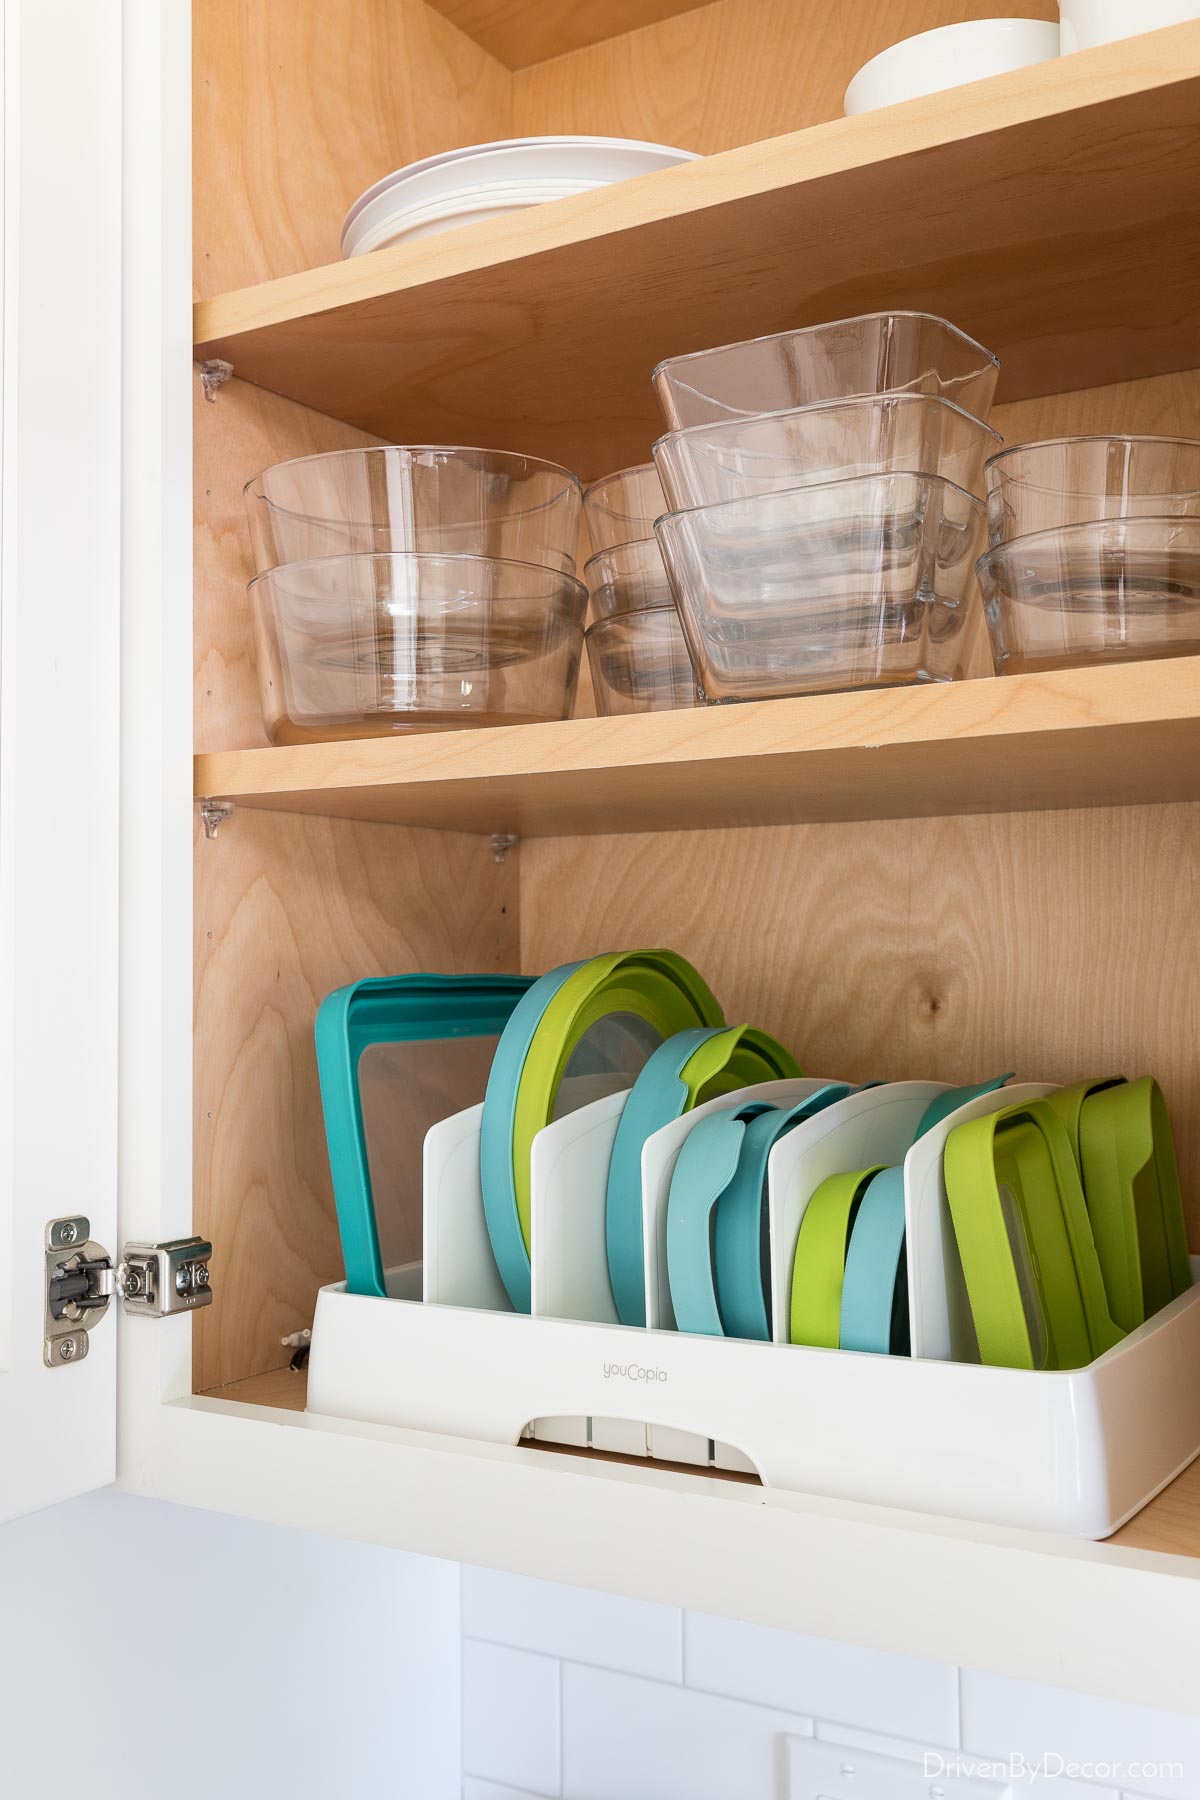 Food storage container lid organizer for kitchen cabinet organization